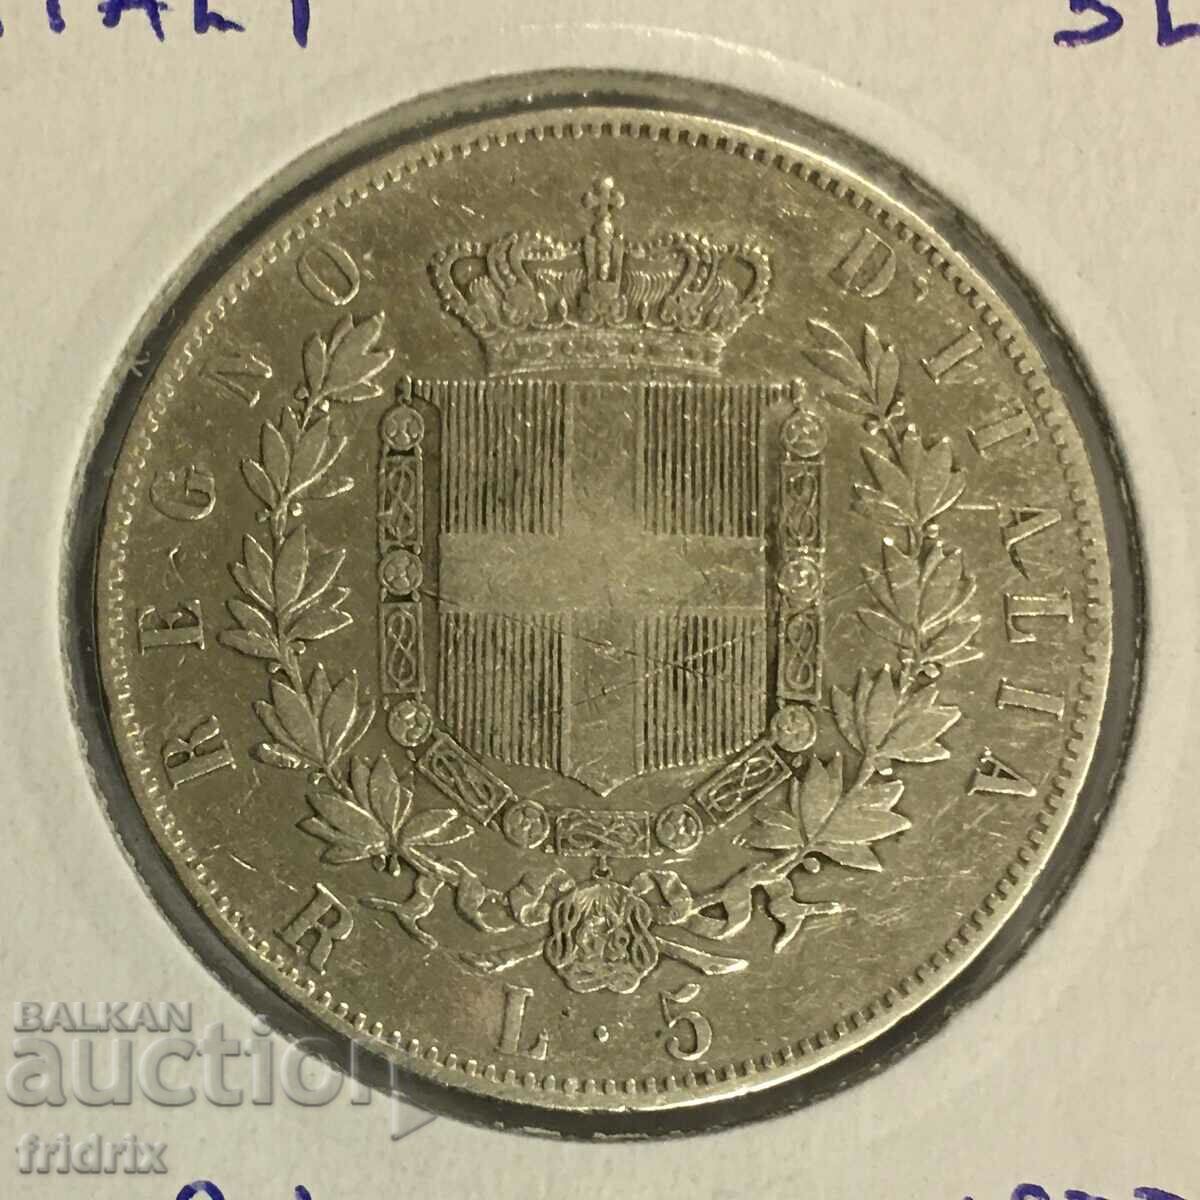 Ιταλία 1877 R / Ιταλία 5 λίρες 1877 R